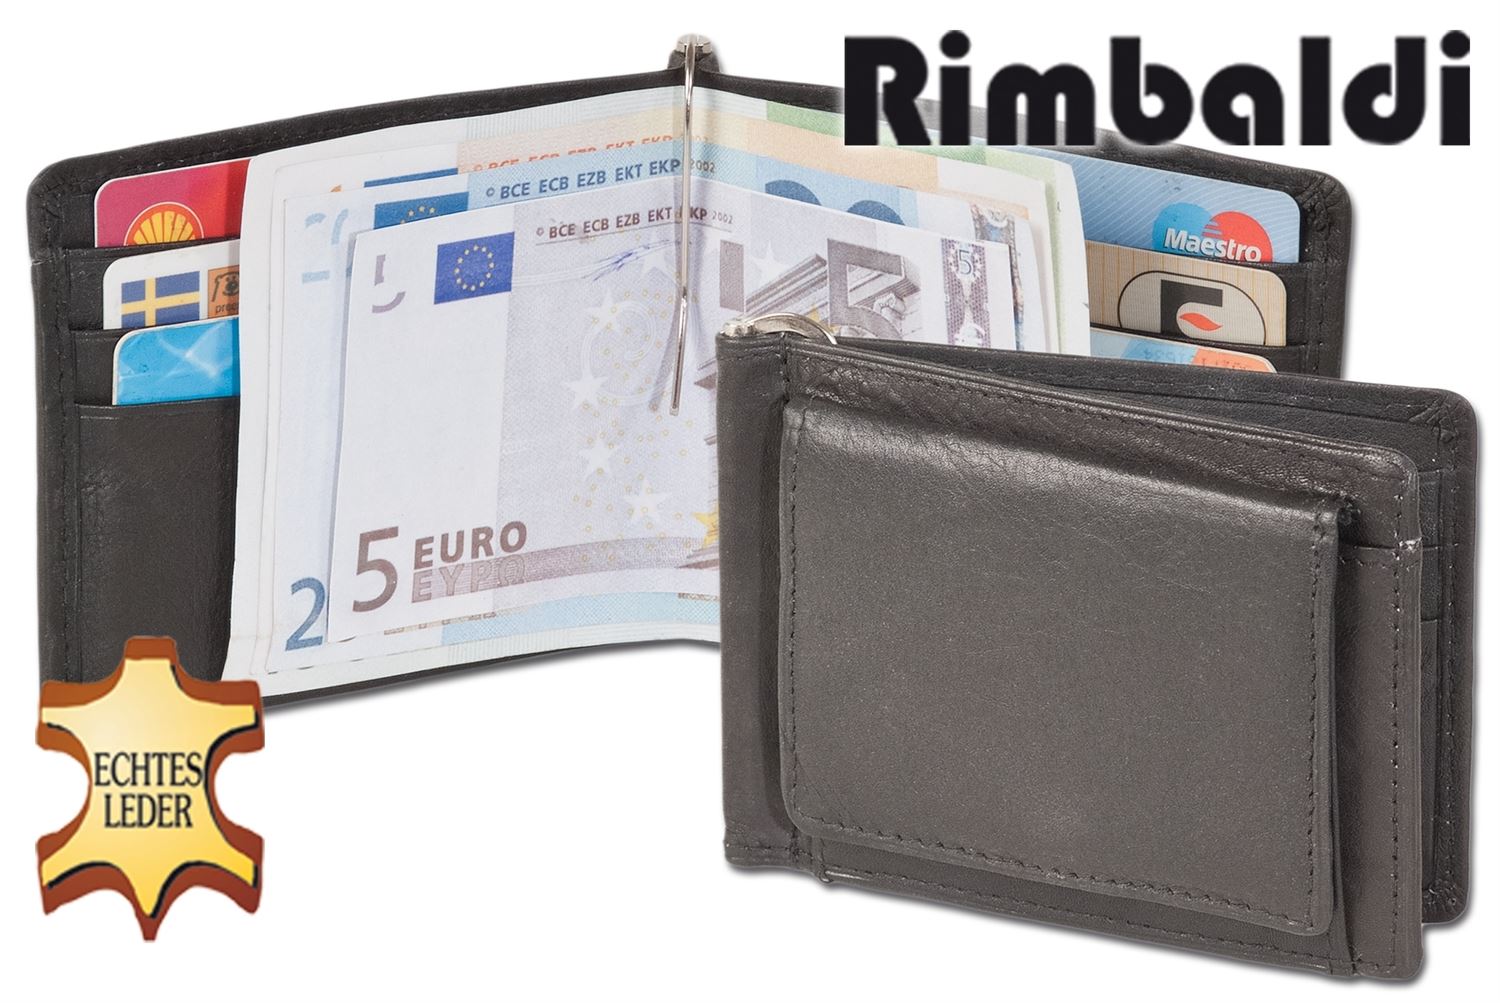 Rimbaldi® Superflache Lederbörse mit Geldklipp und Außen-Münzfach aus weichem Rind-Nappaleder in Schwarz